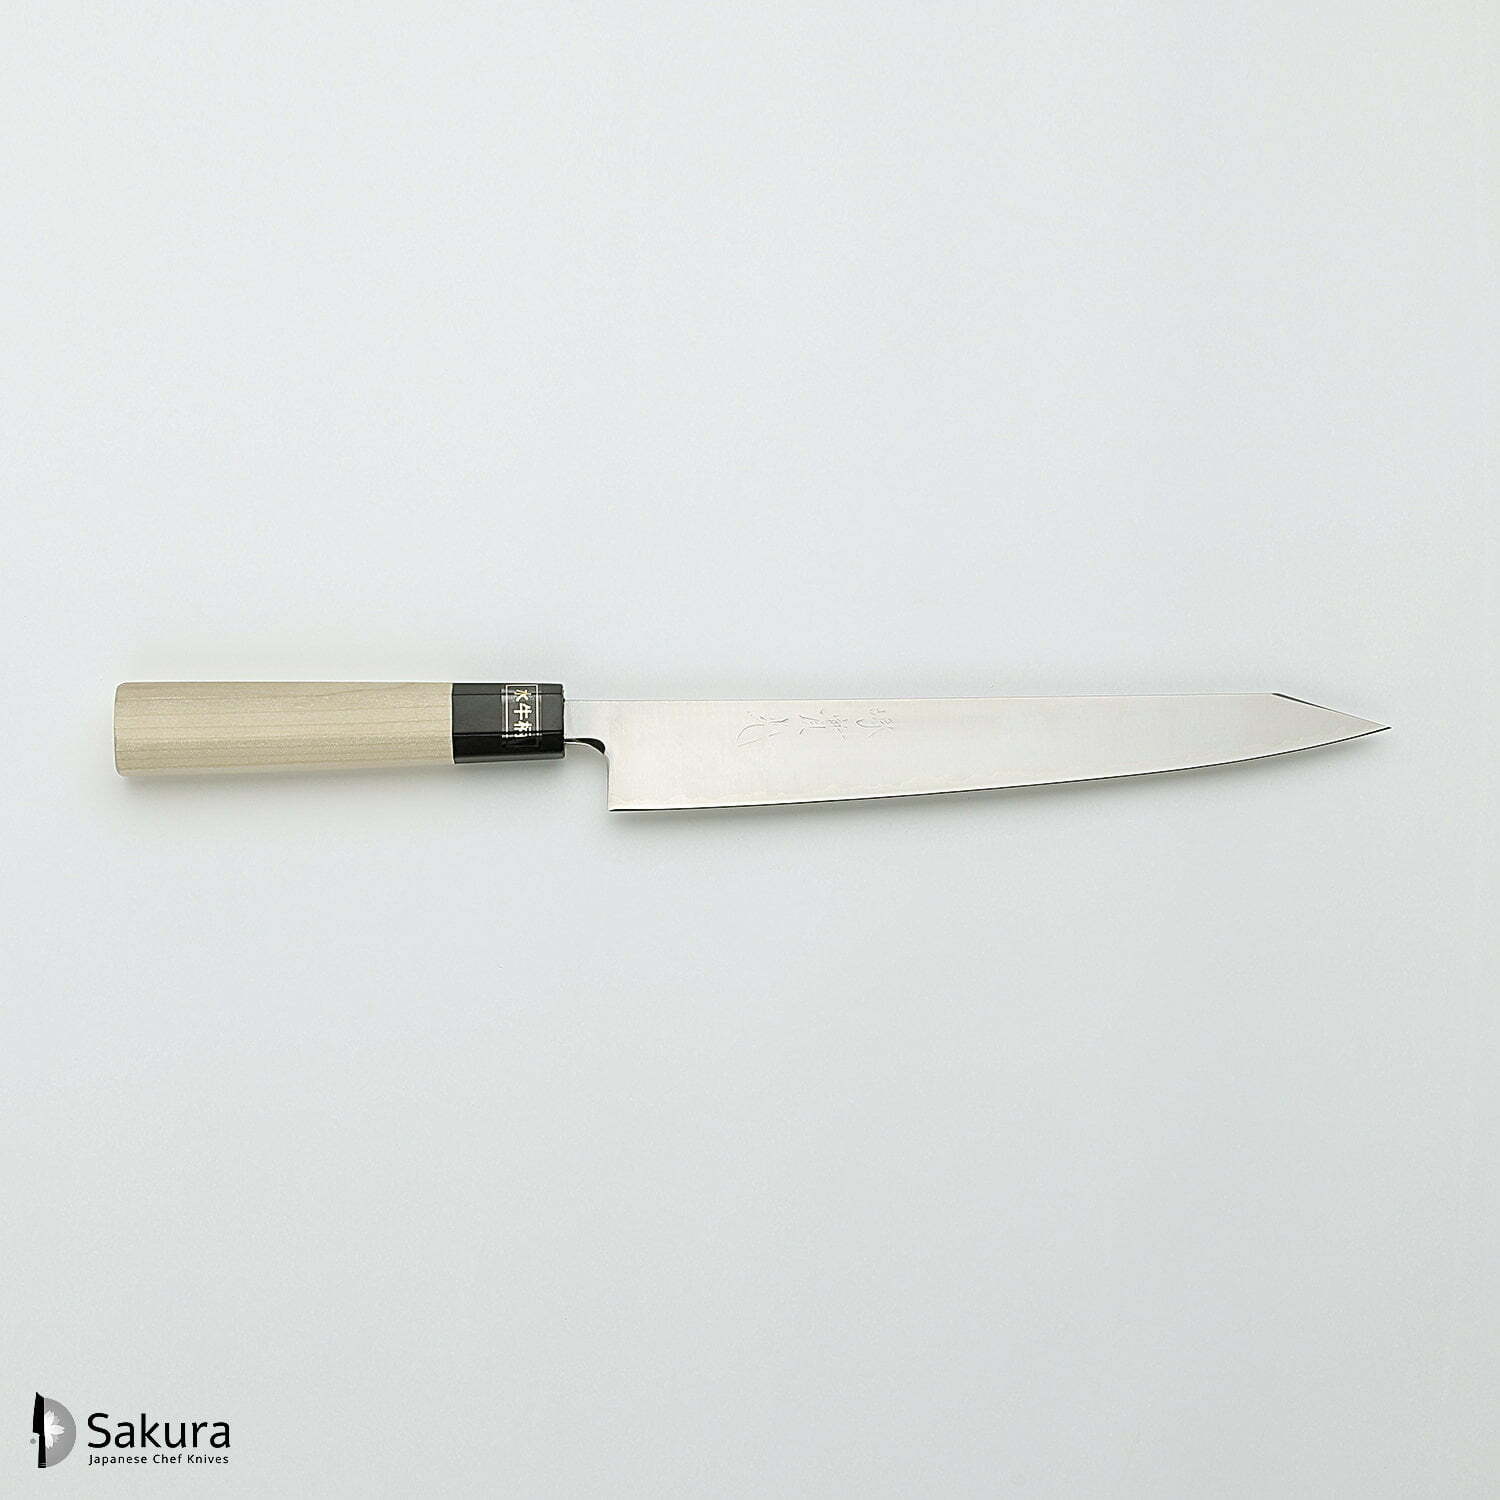 סכין חיתוך ופריסת בשר קִּירִיצוּקֶה סוּגִּ’יהִיקִי 240מ״מ מחוזקת 3 שכבות: פלדת פחמן יפנית מתקדמת מסוג R2/SG2 עטופה פלדת אל-חלד גימור מבריק ג׳יקו סאקאיי יפן